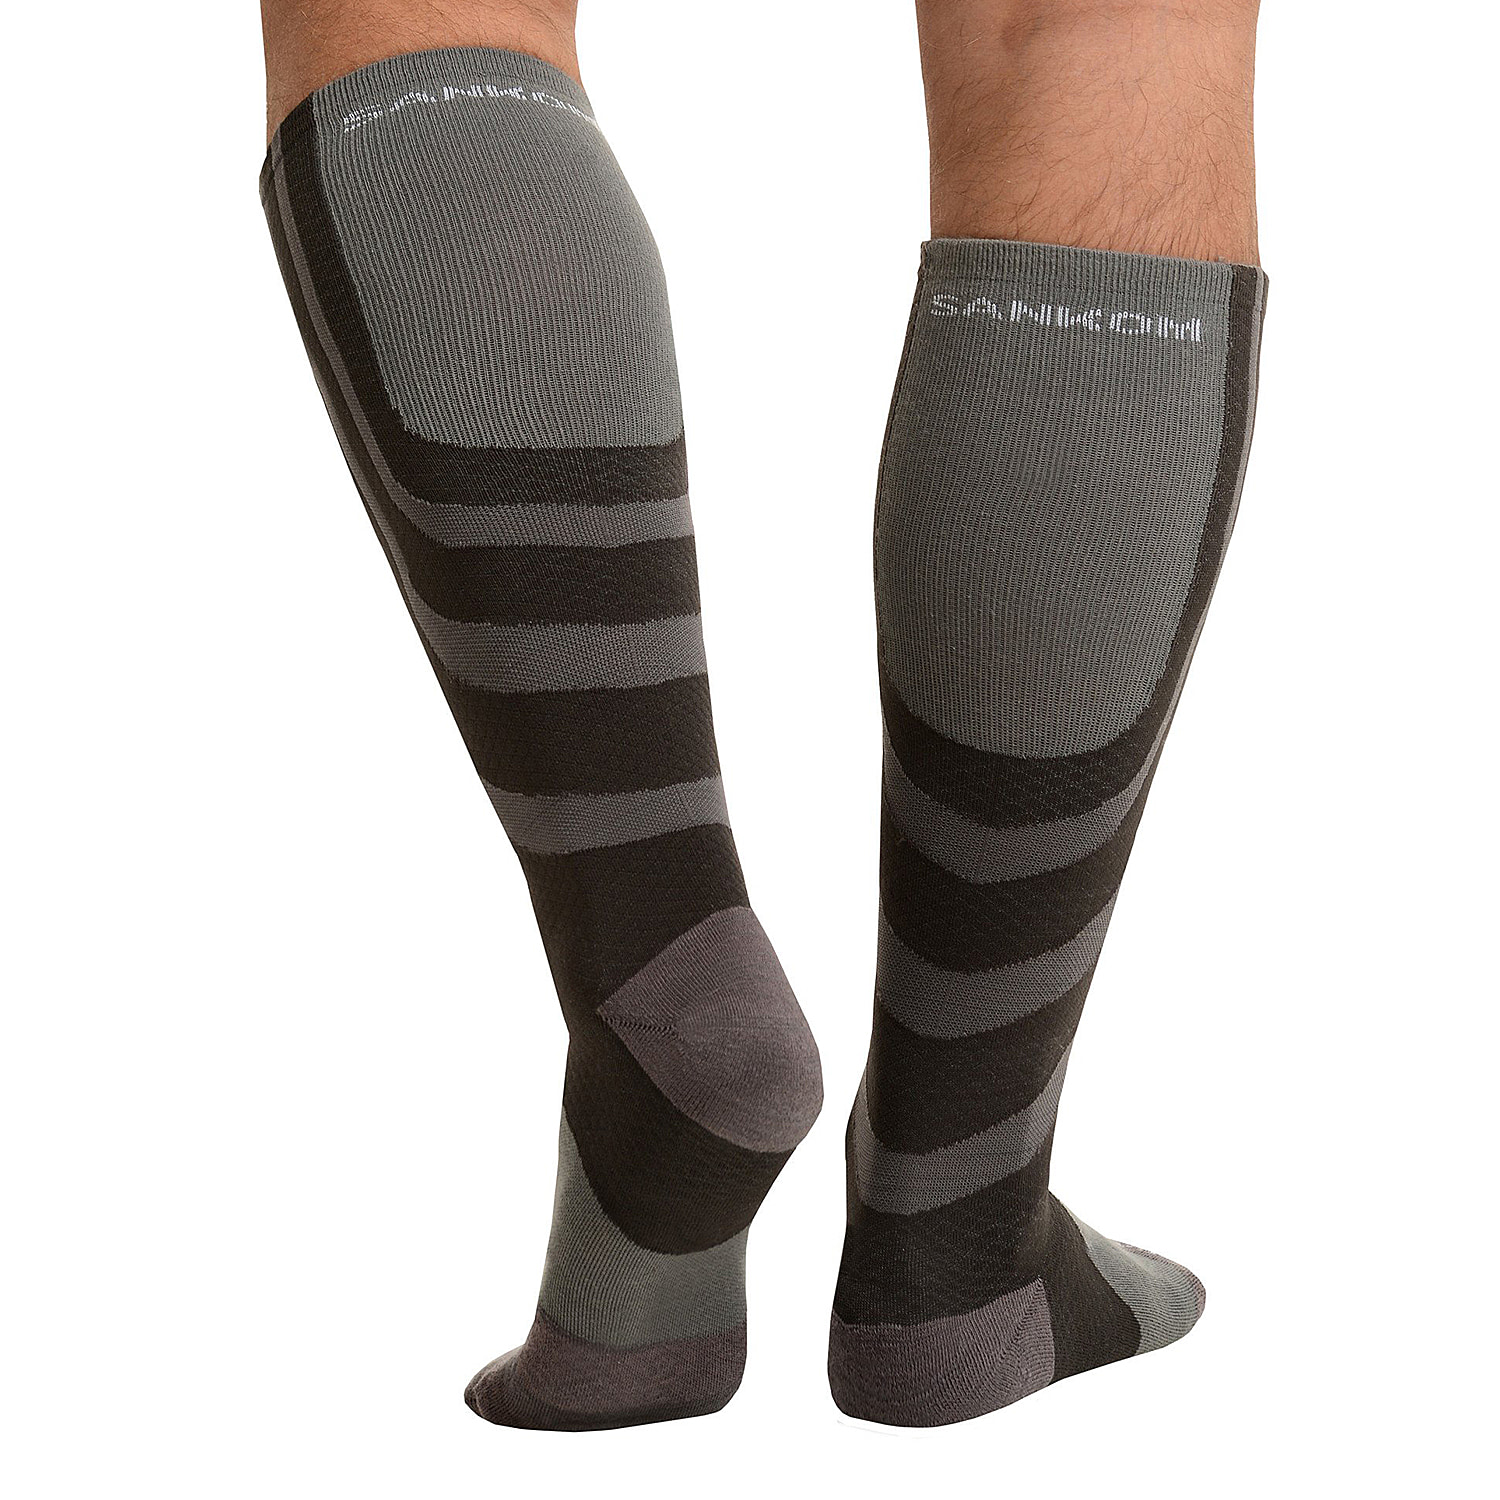 SANKOM SWITZERLAND Patent Socks - Grey - 3098044 - TJC